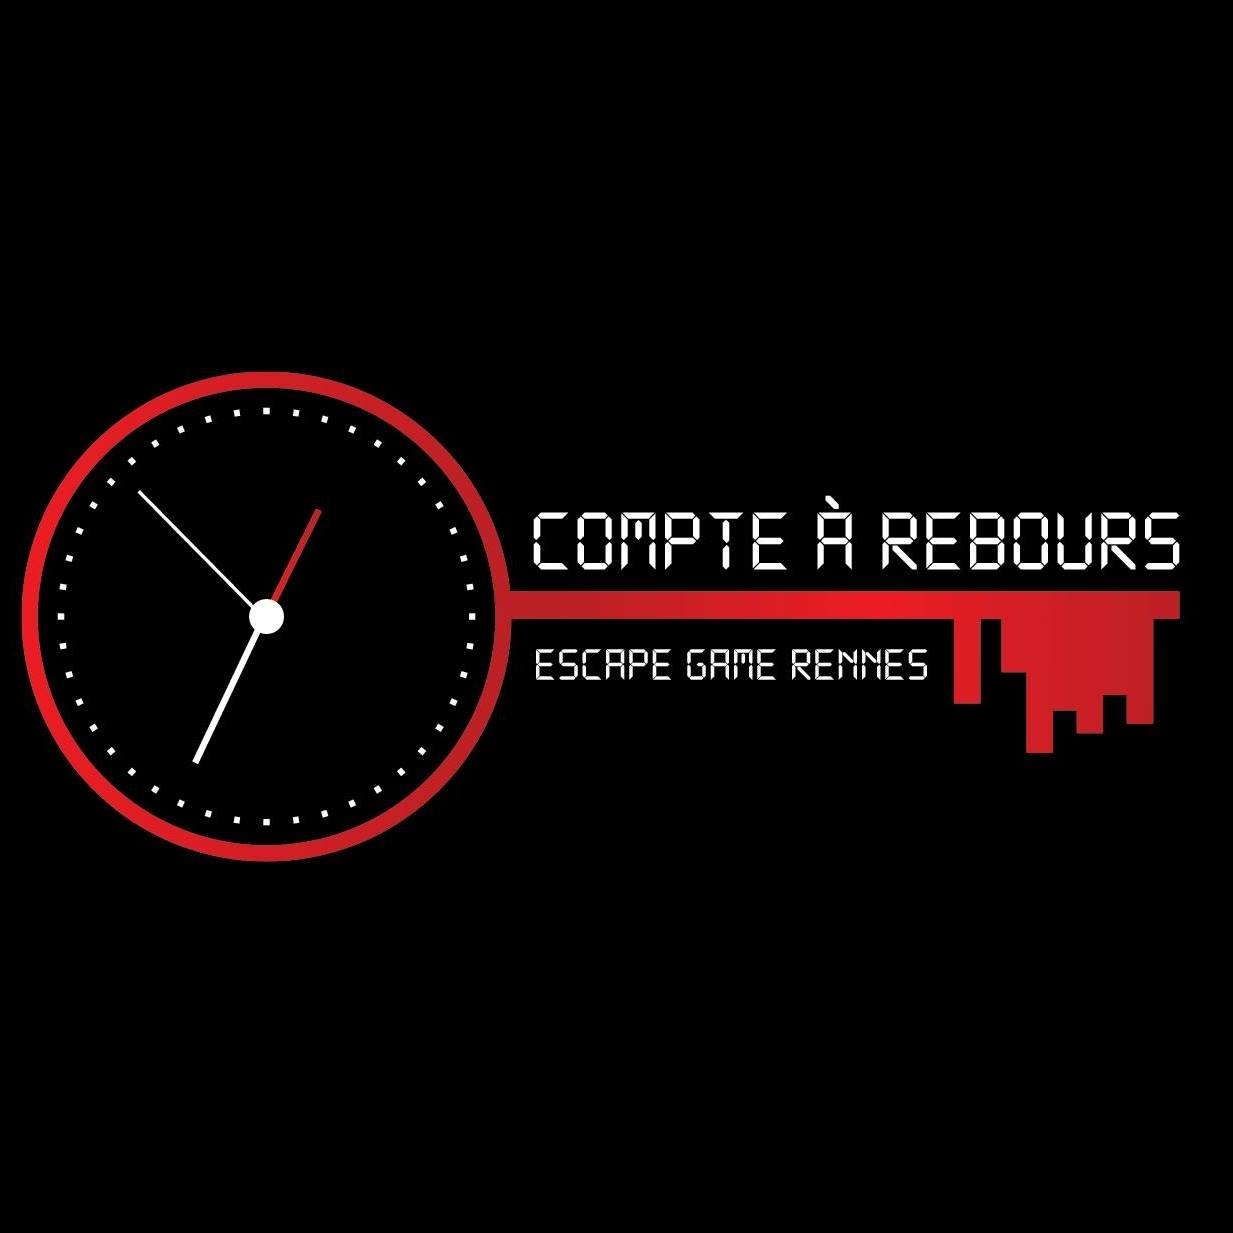 Escape Game Compte à Rebours, Rennes